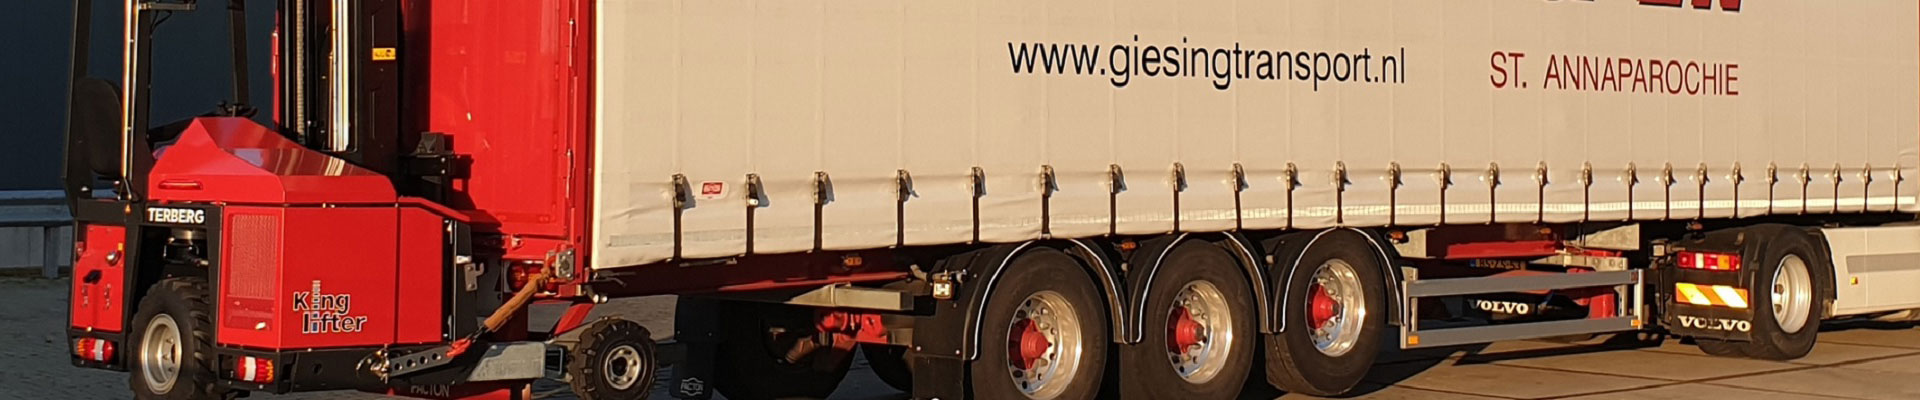 vendita e noleggio trattori portuali | assistenza tecnica gru mobili portuali MHC Fantuzzi Reggiane